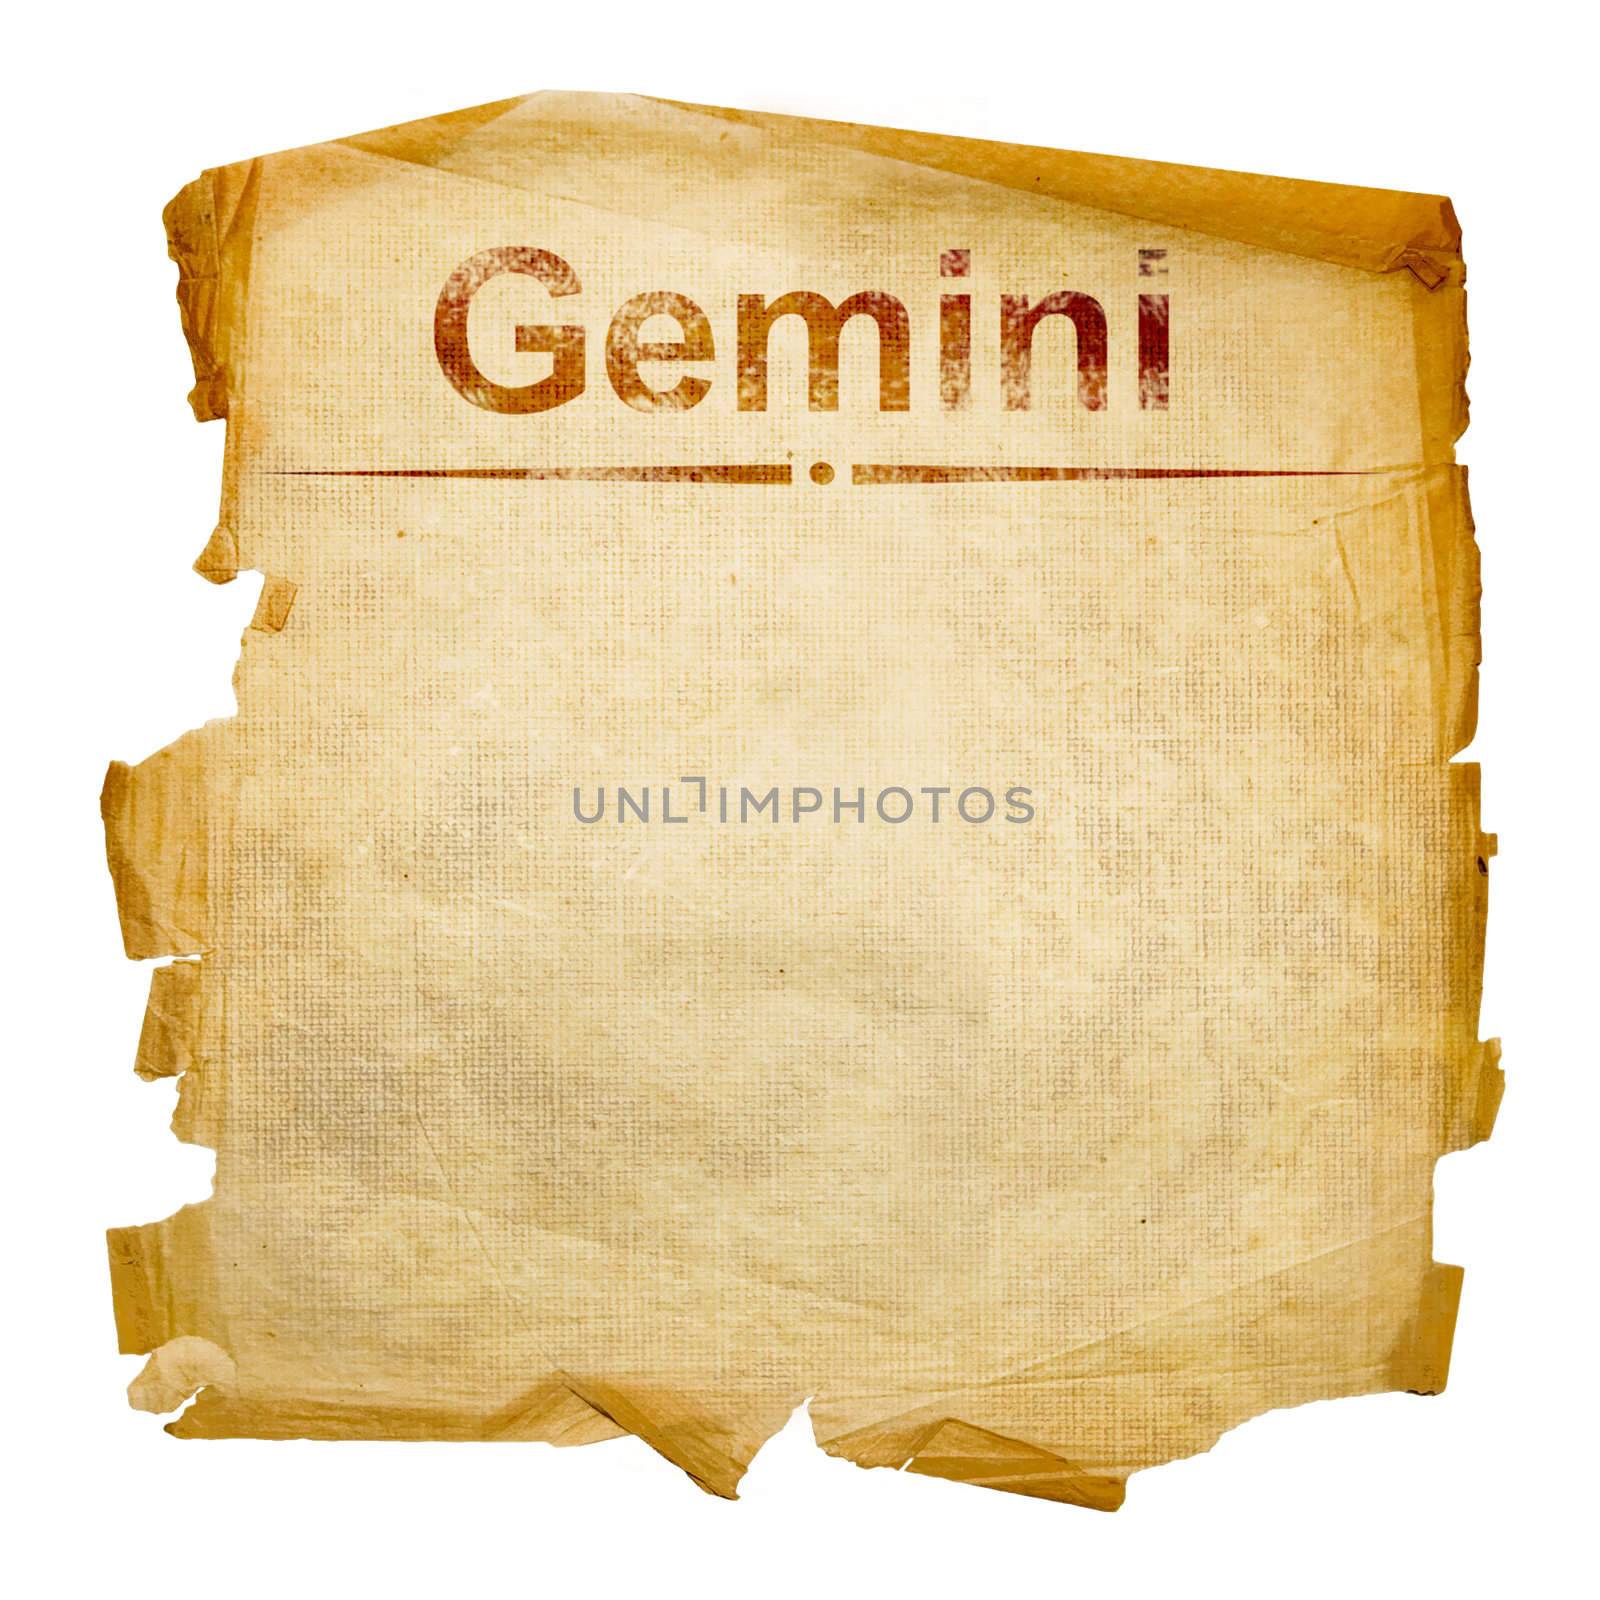 Gemini zodiac old, isolated on white background.